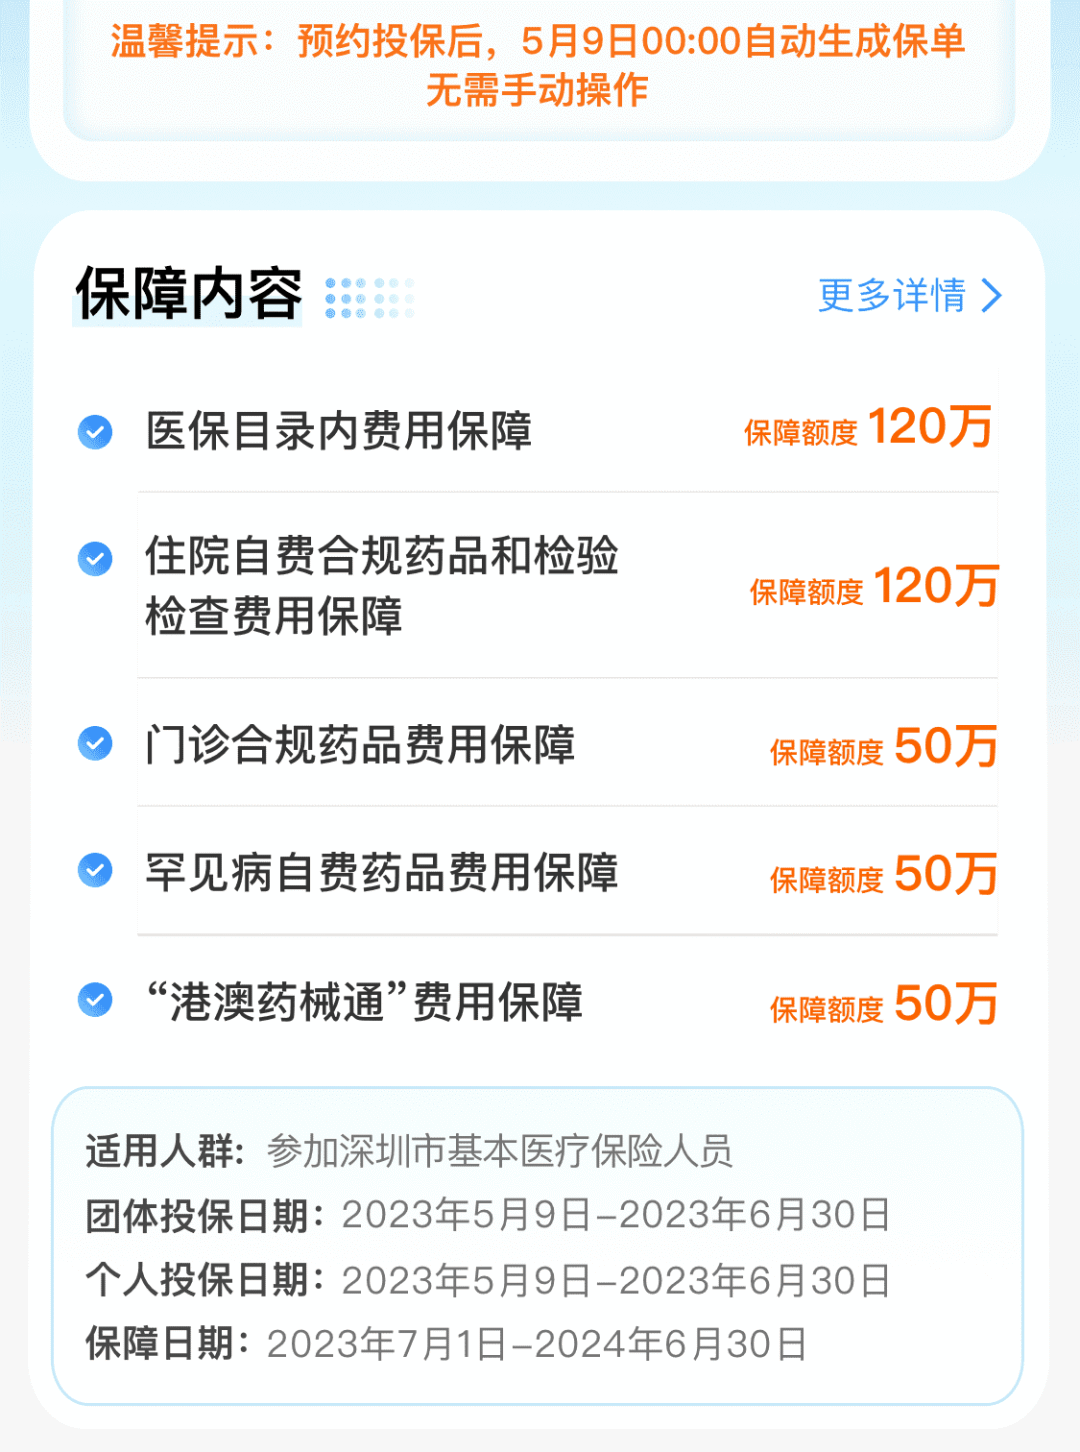 深圳惠民保今日上线，原重疾险升级